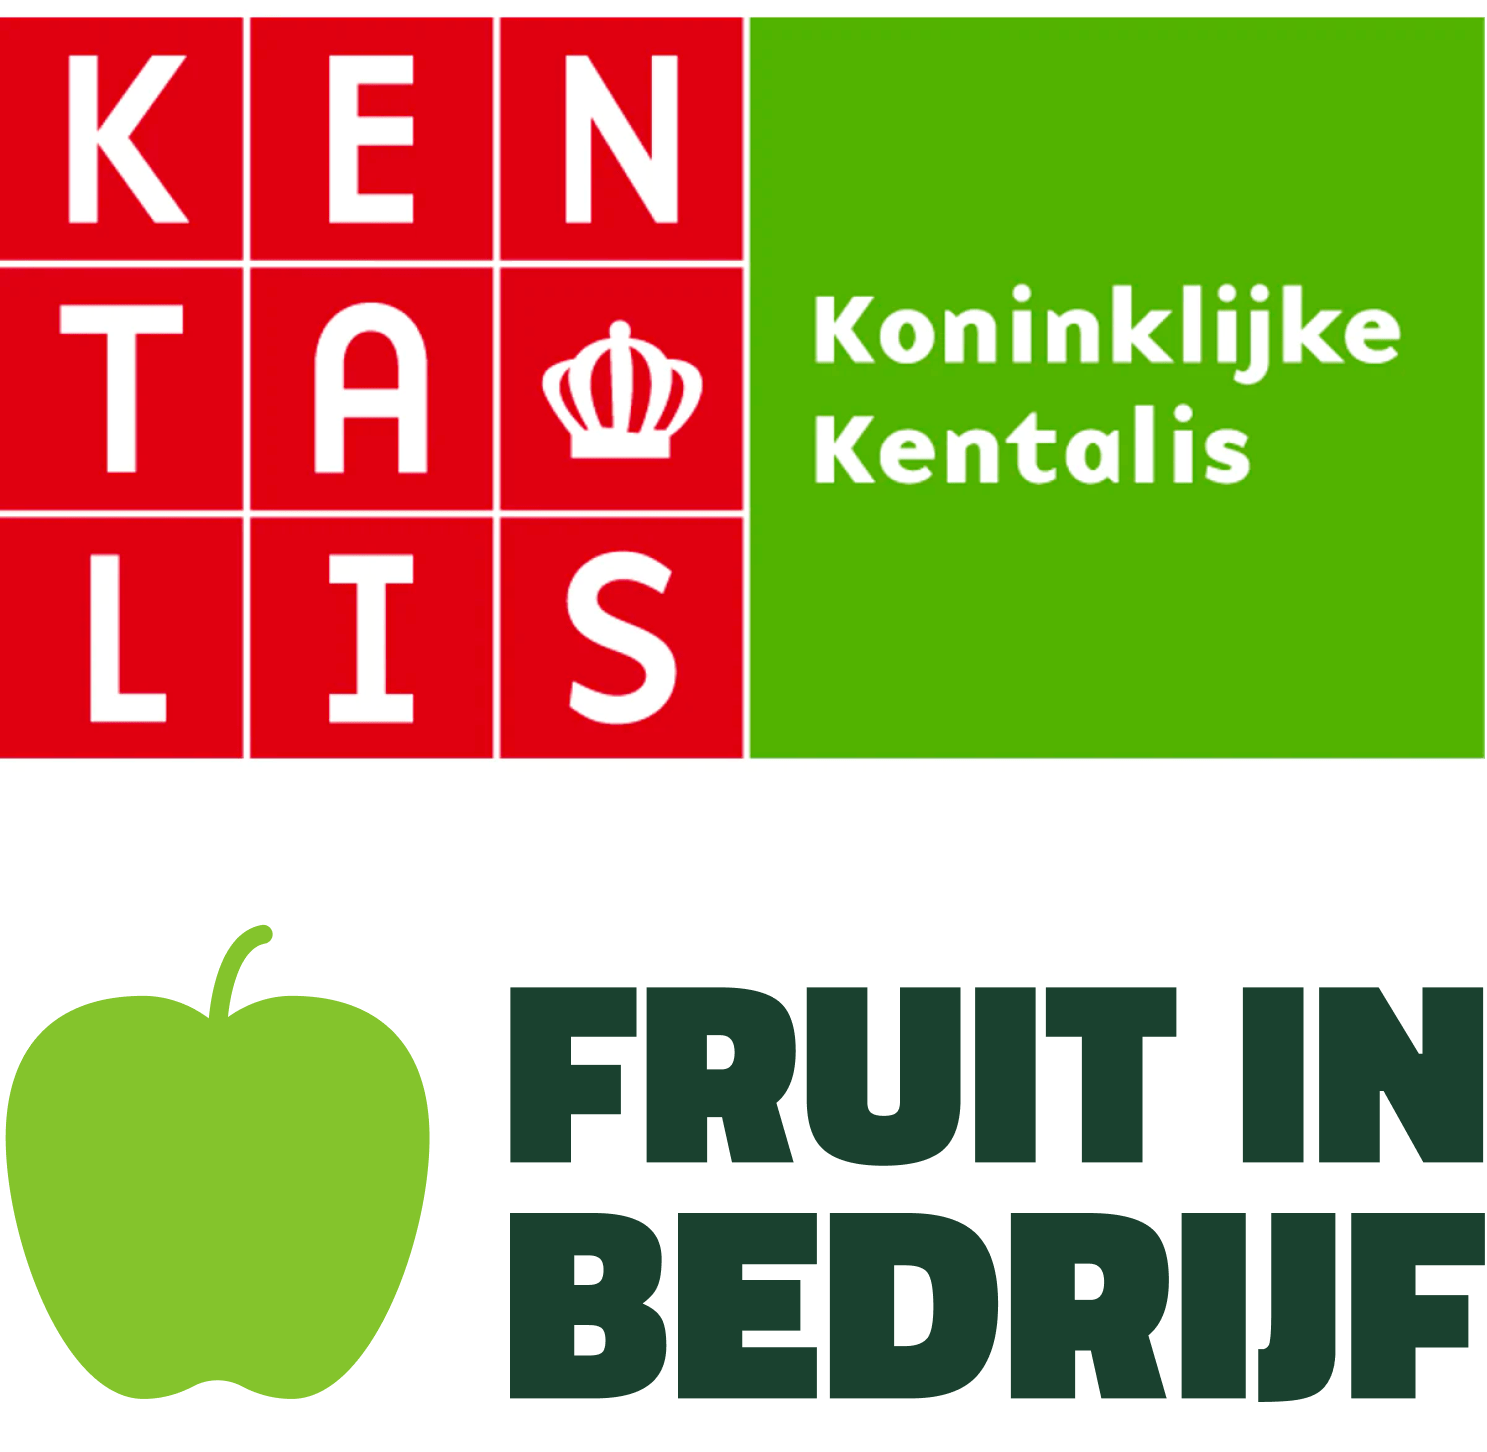 Fruit in bedrijf app